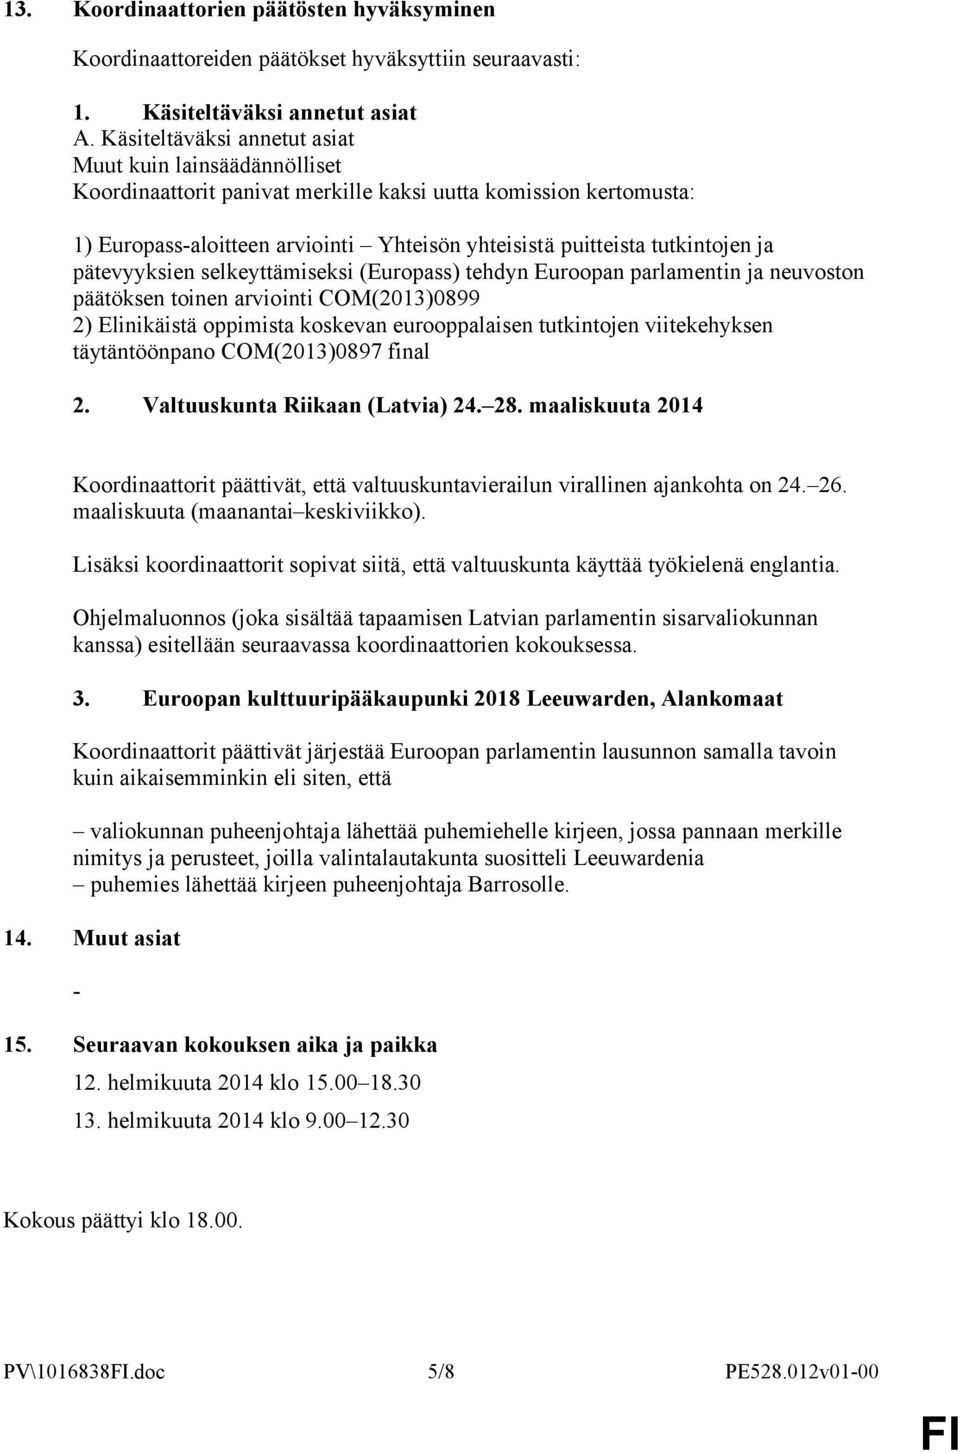 ja pätevyyksien selkeyttämiseksi (Europass) tehdyn Euroopan parlamentin ja neuvoston päätöksen toinen arviointi COM(2013)0899 2) Elinikäistä oppimista koskevan eurooppalaisen tutkintojen